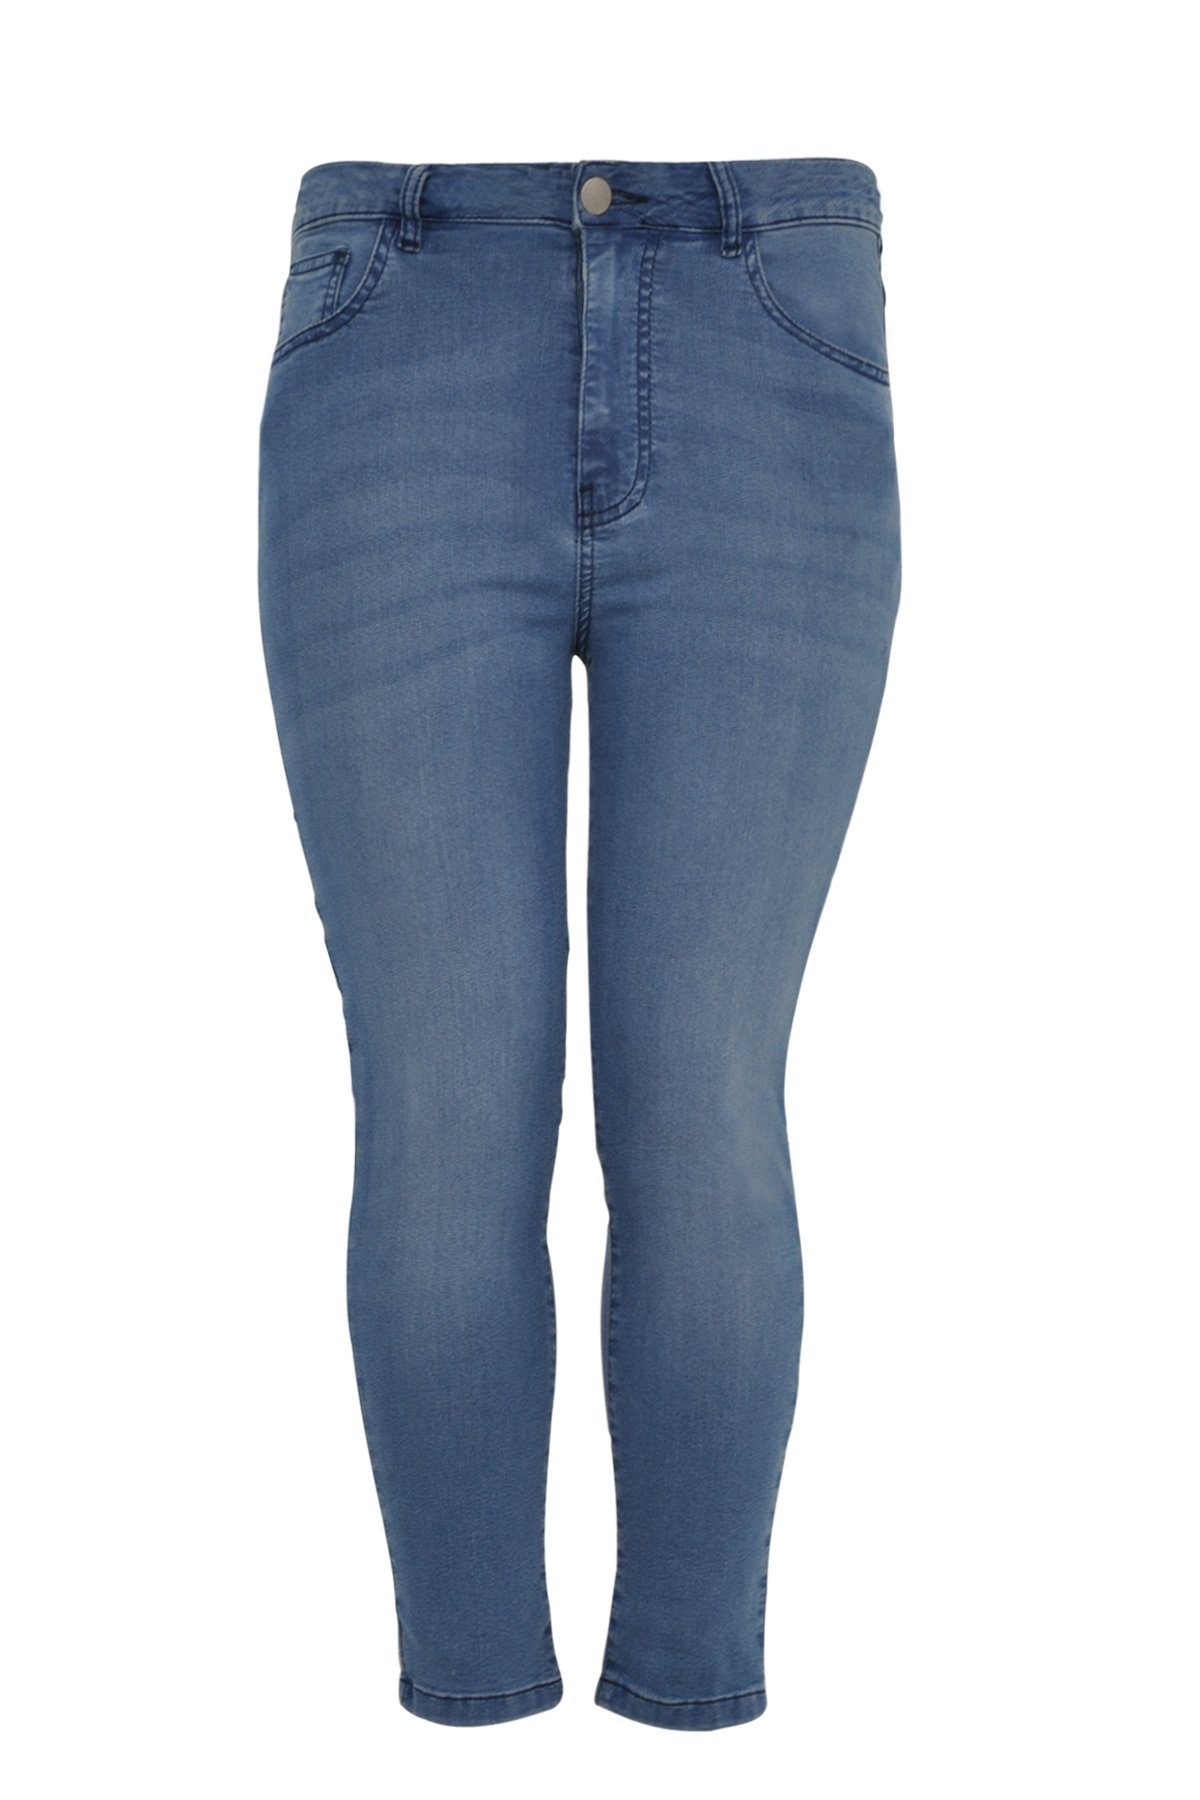 Yoek Große Größen High-waist-Jeans indigo